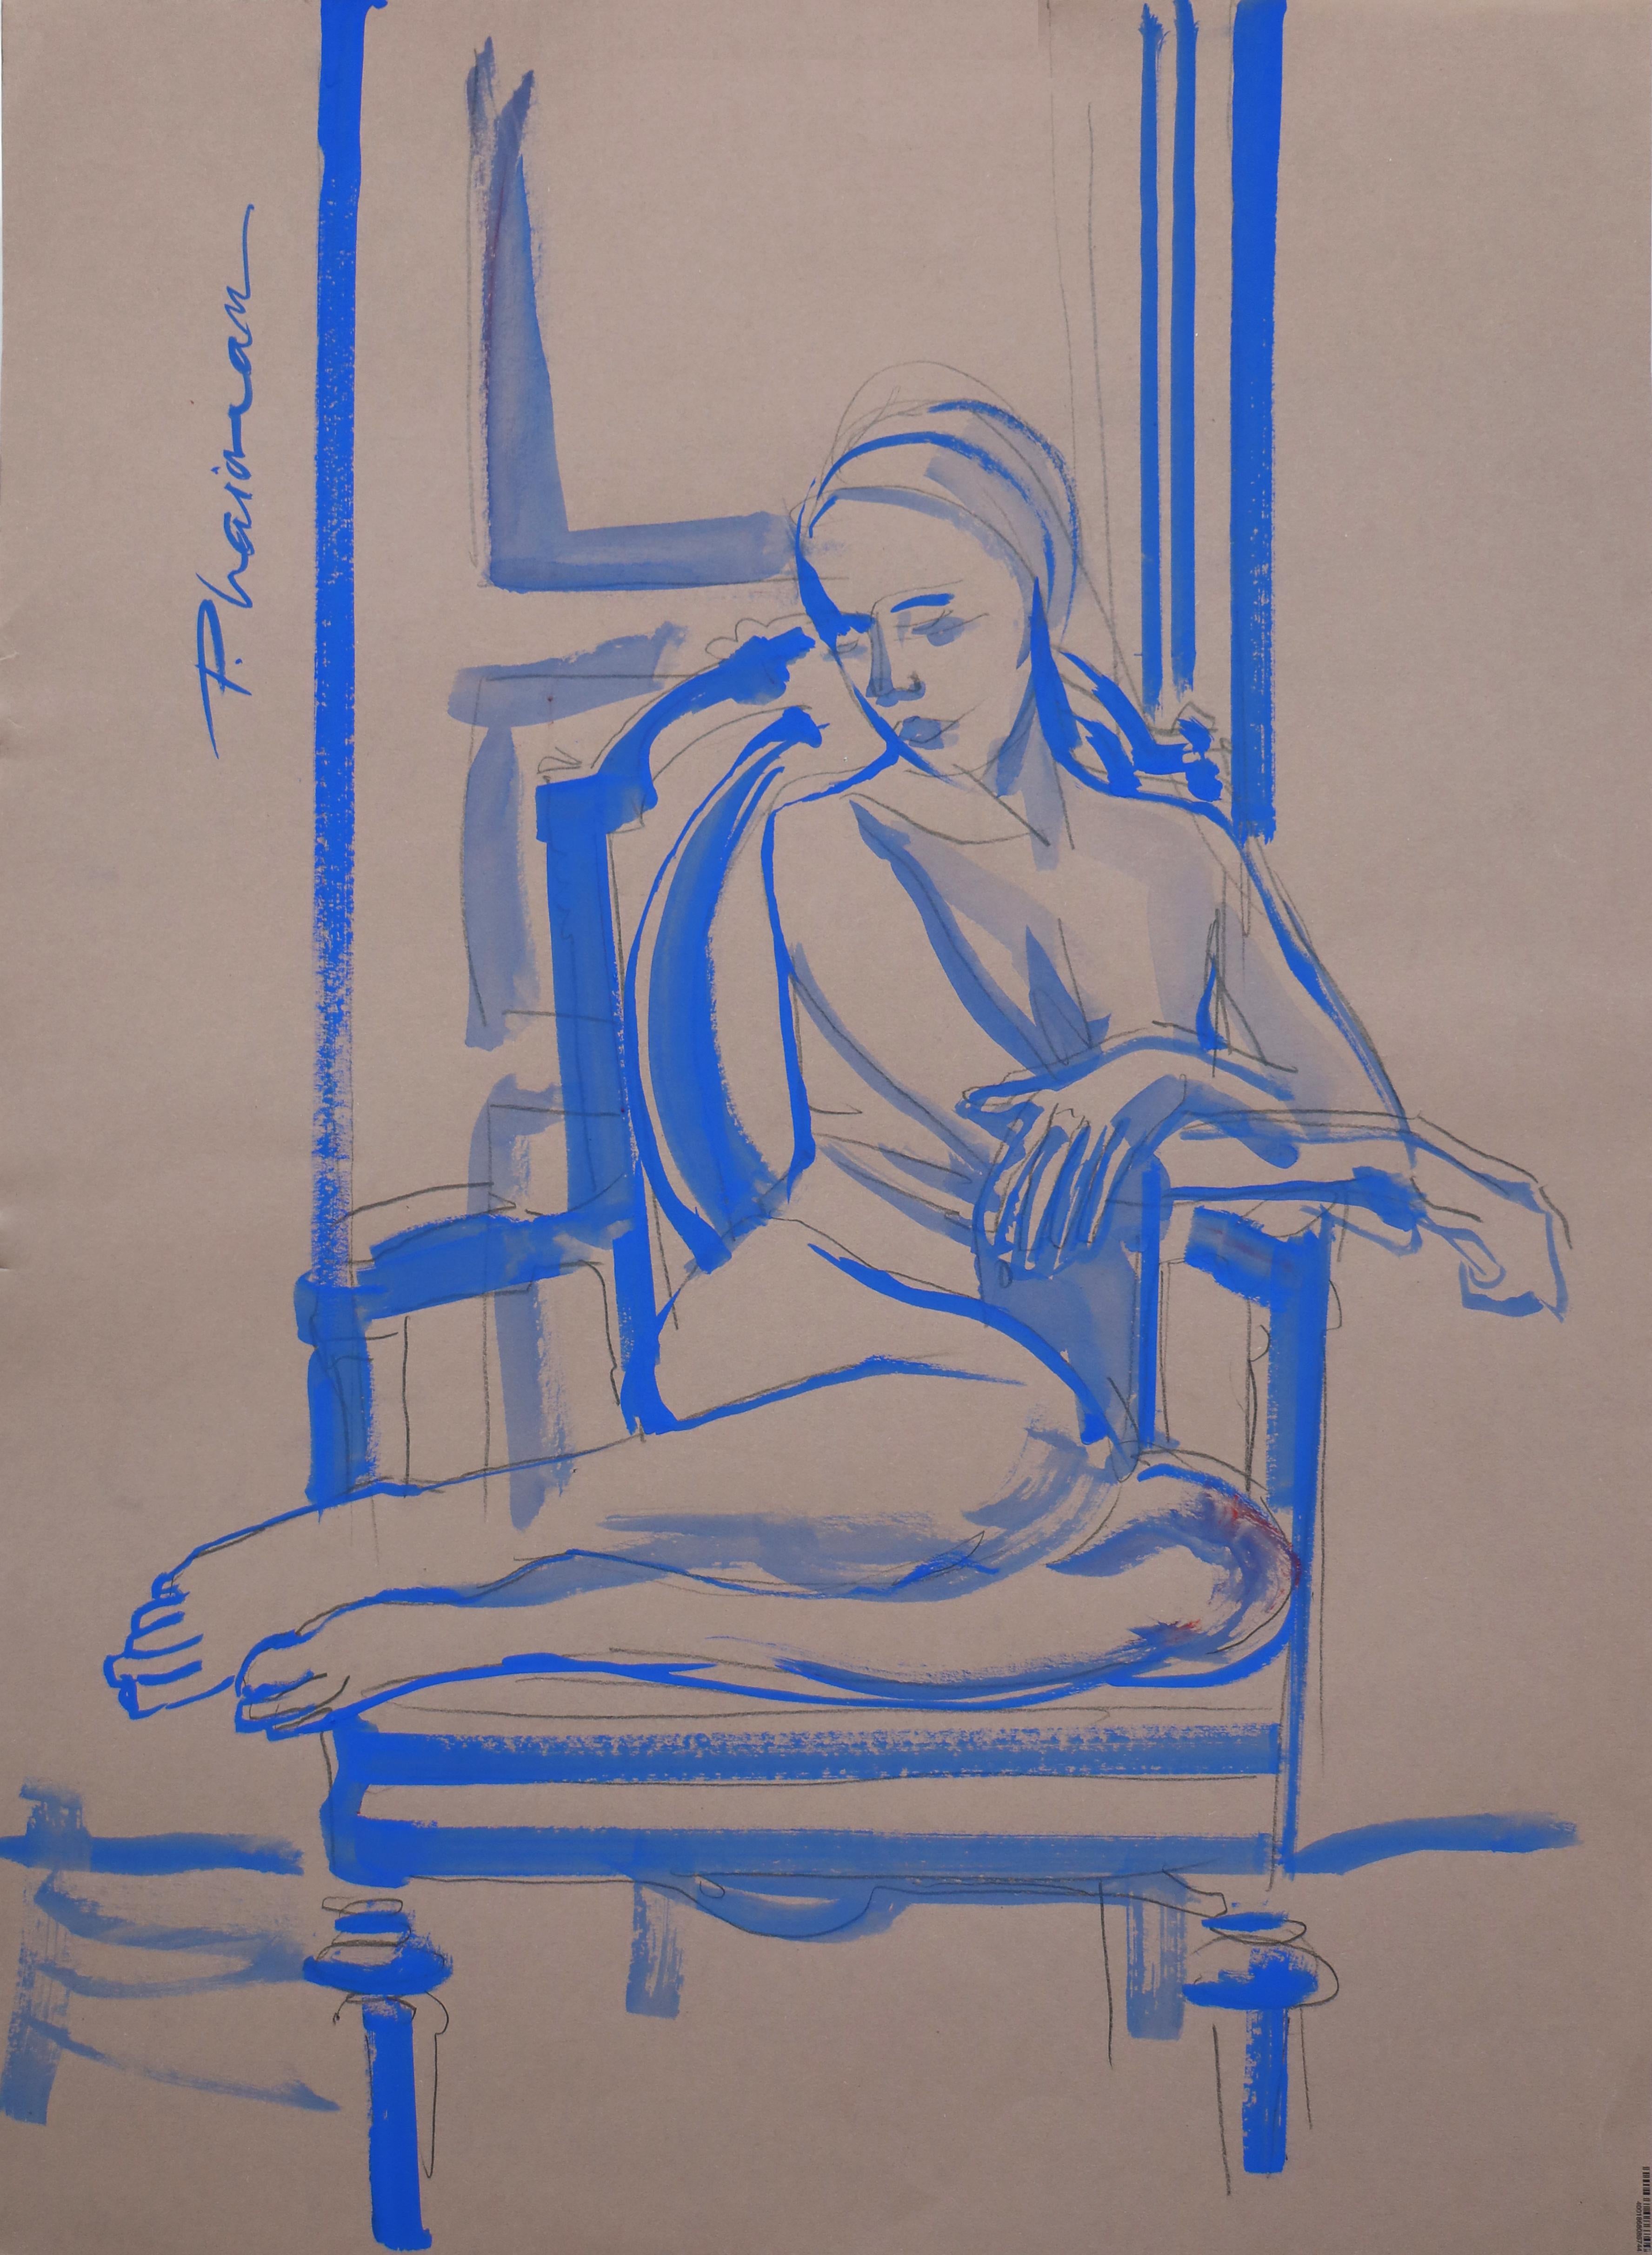 "Nu en bleu" 
Une partie de ma série Nus à l'intérieur.
Nu féminin, tempera bleu outremer sur papier gris bleu, inspiré de Matisse.
70x50cm / 27.5x19.5in
Envoyé roulé dans un tube depuis la Floride, US, bien emballé.
